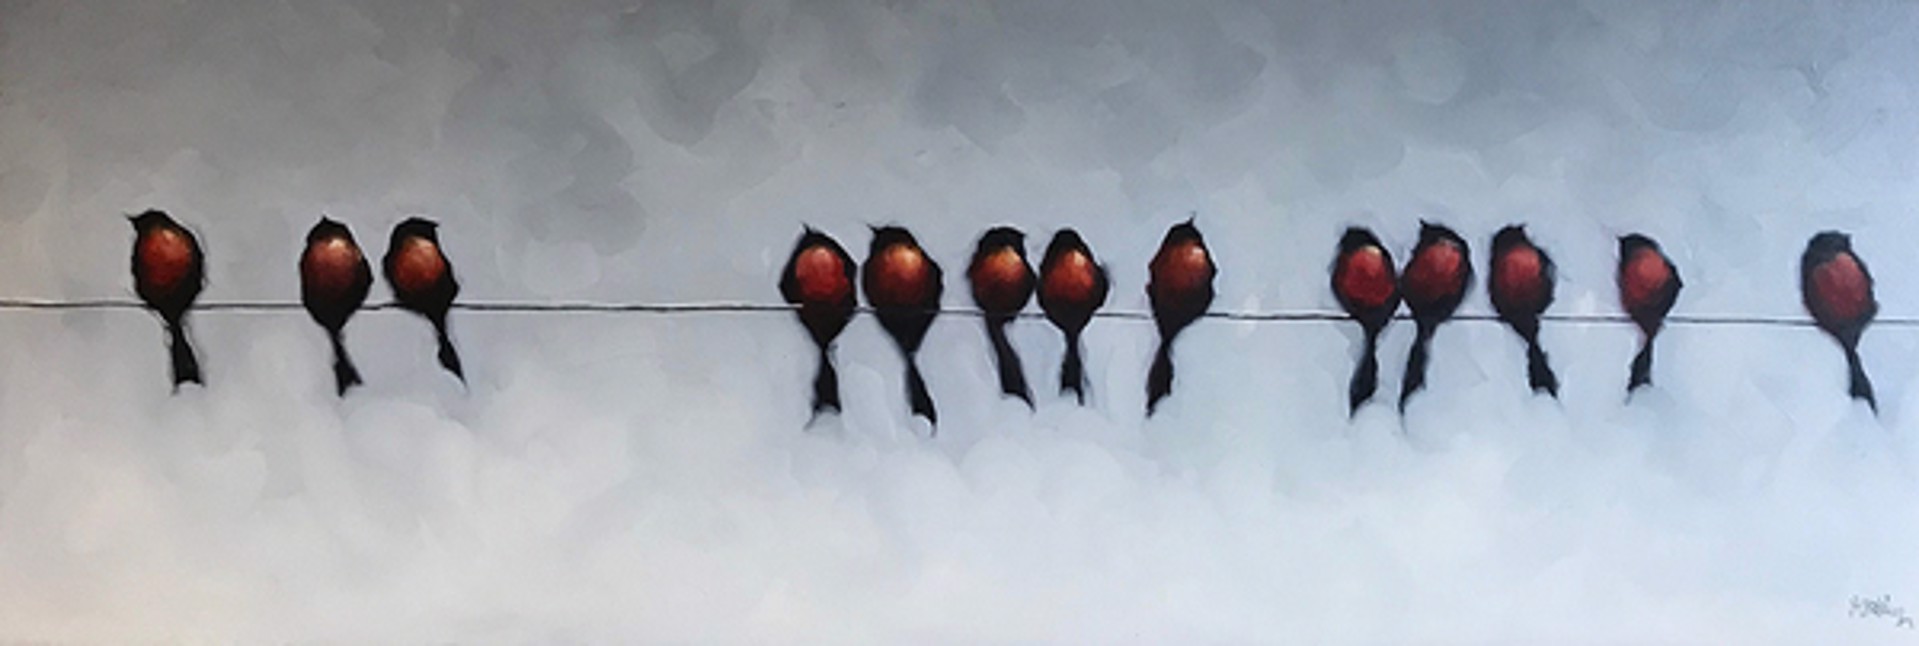 Red Birds by Harold Braul